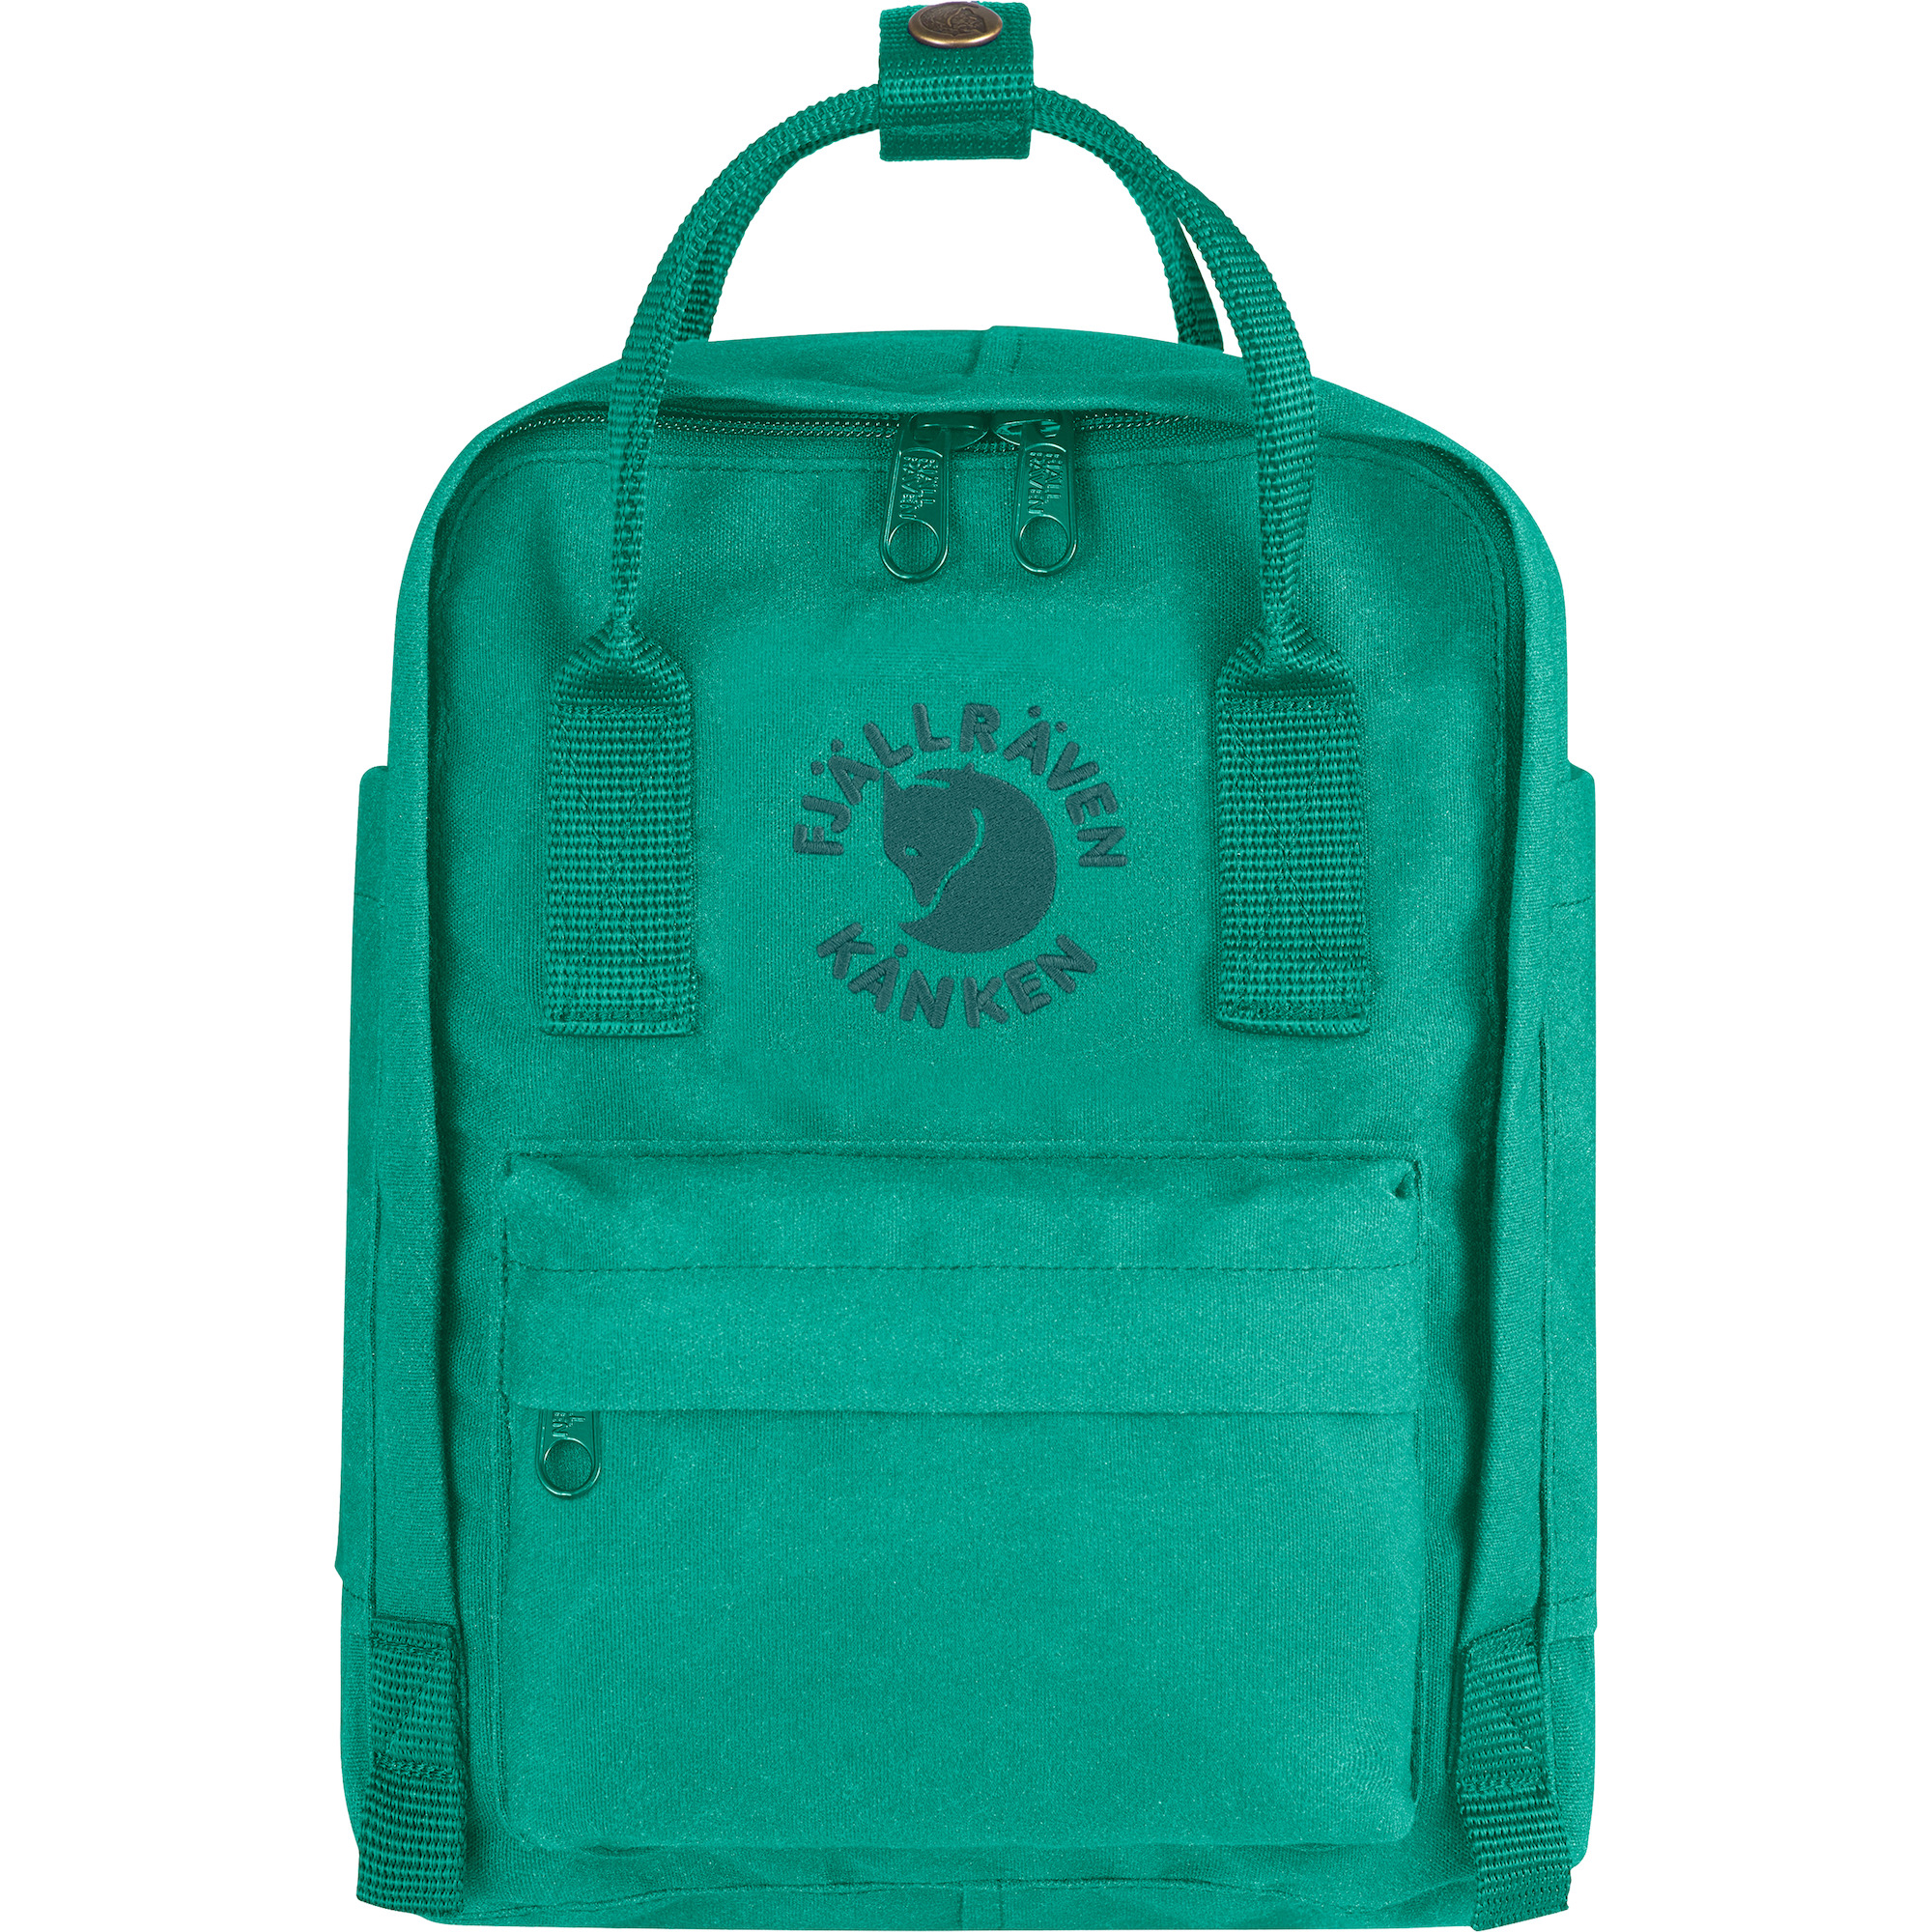 Angebot ermöglichen Re-Kånken Mini Backpack - Fjällräven